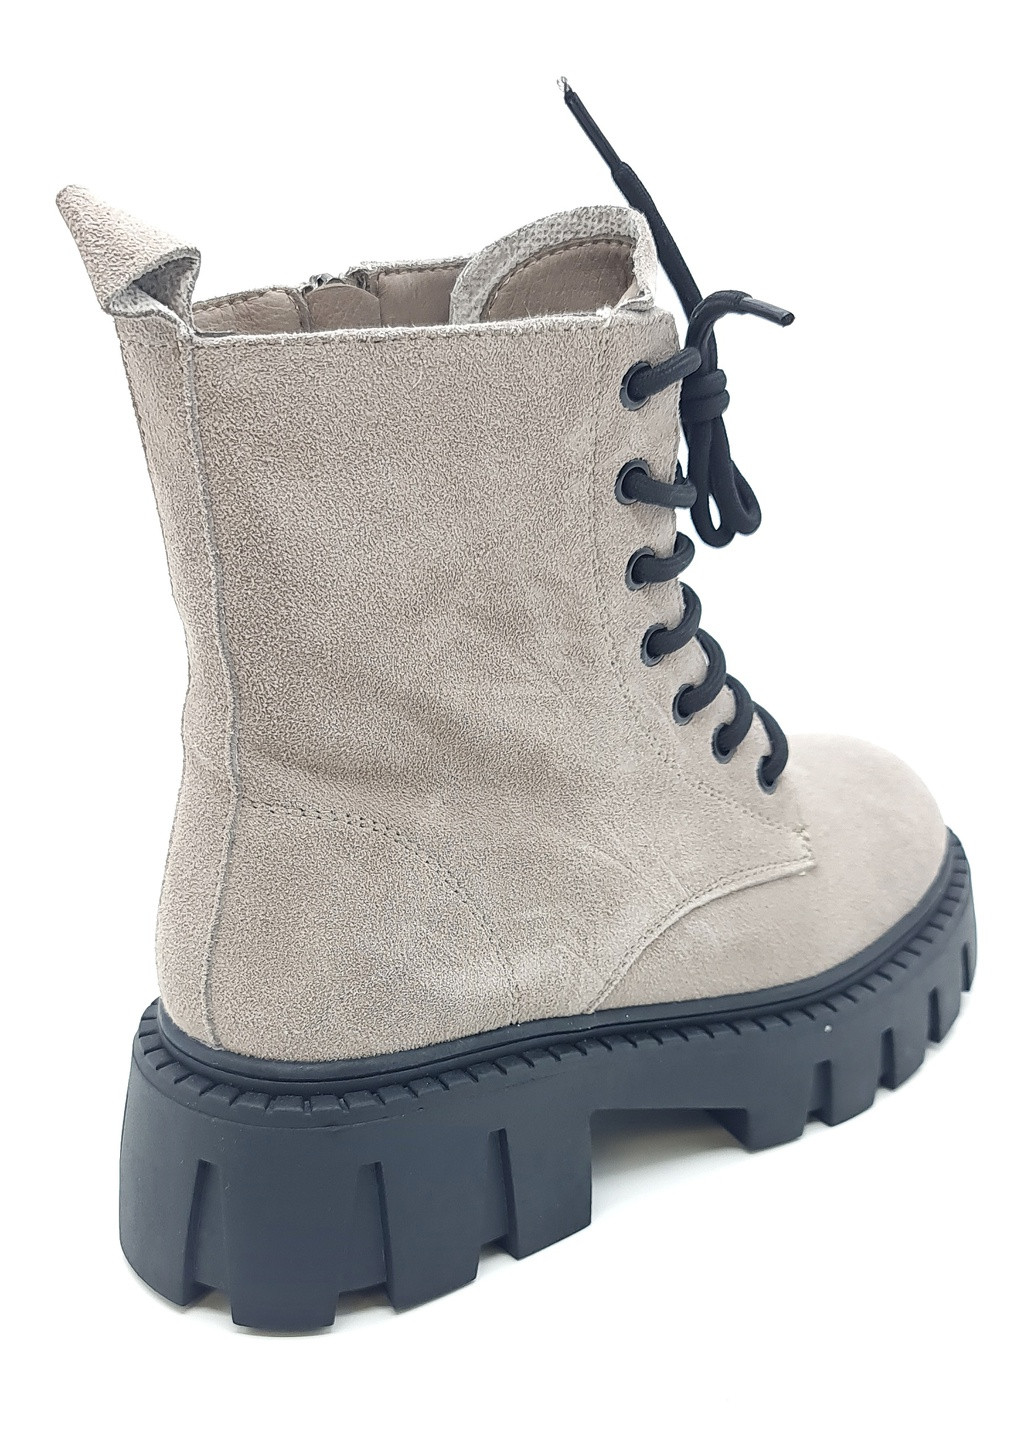 Осенние женские ботинки зимние серые замшевые ii-11-17 23 см(р) It is